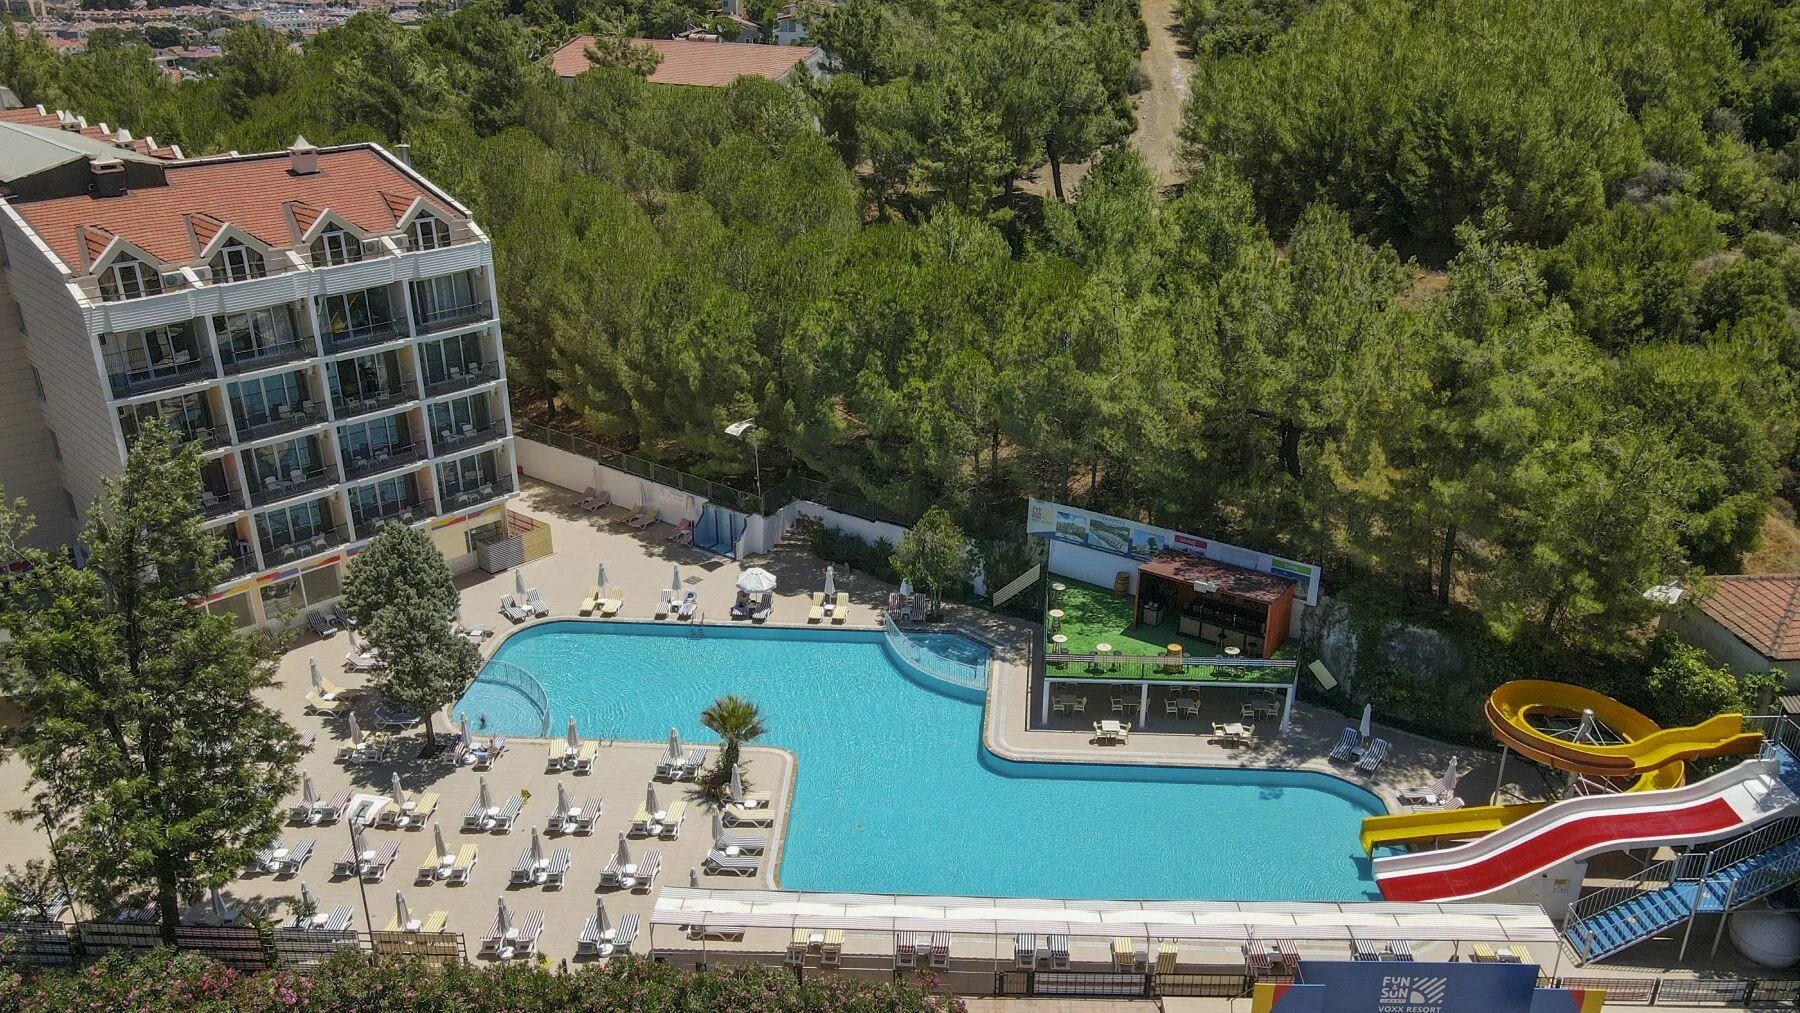 Отель фан Сан Мармарис. Voxx Resort Мармарис. Voxx Resort (ex. Kervansaray Marmaris) 5* Мармарис. Fun Sun Smart Voxx Resort 5 Мармарис.